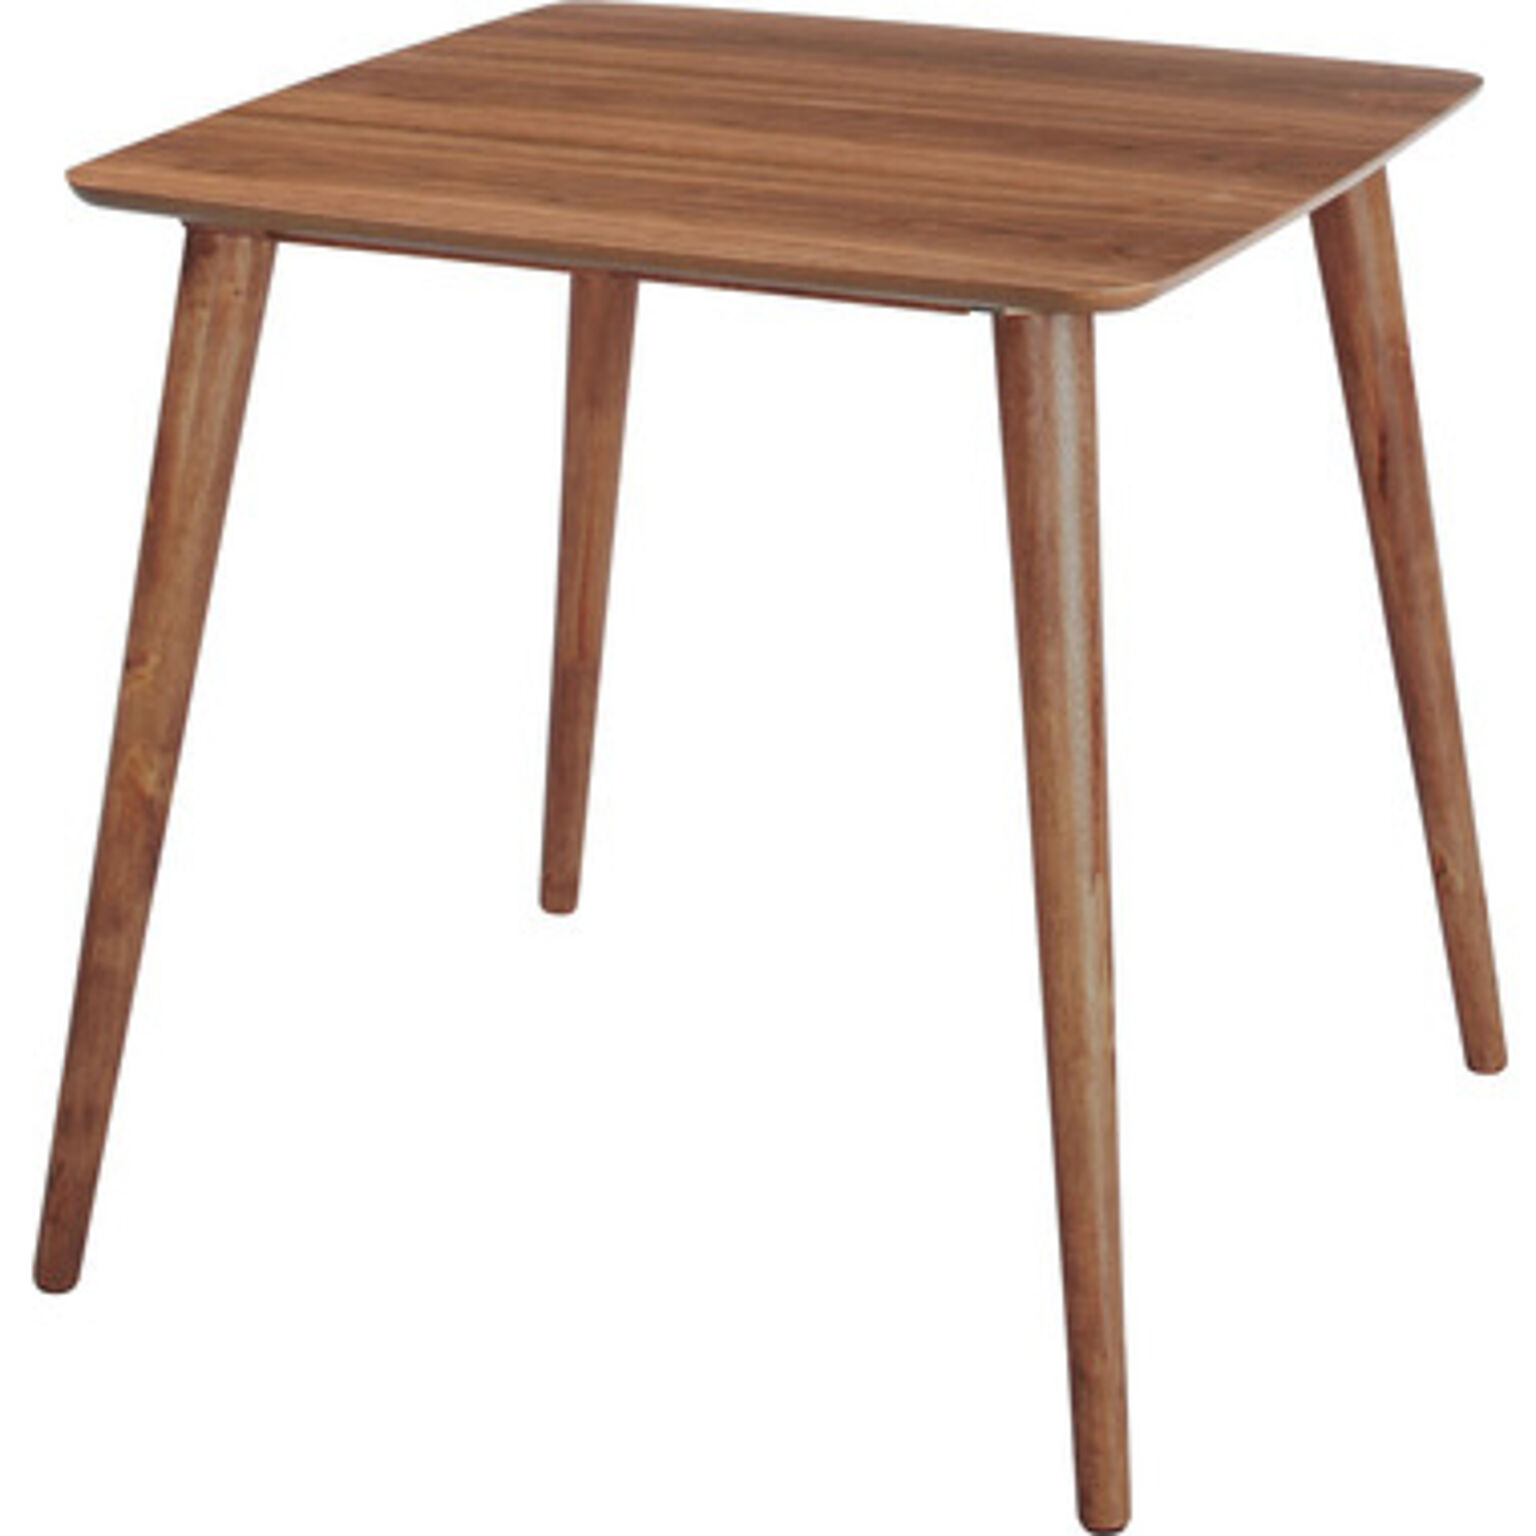 トムテ 天然木ダイニングテーブル75 天然木 ラバーウッド 北欧 食卓 テーブル ロー ダイニング 食卓テーブル カフェテーブル おしゃれ 木製 二人掛け 2人掛け